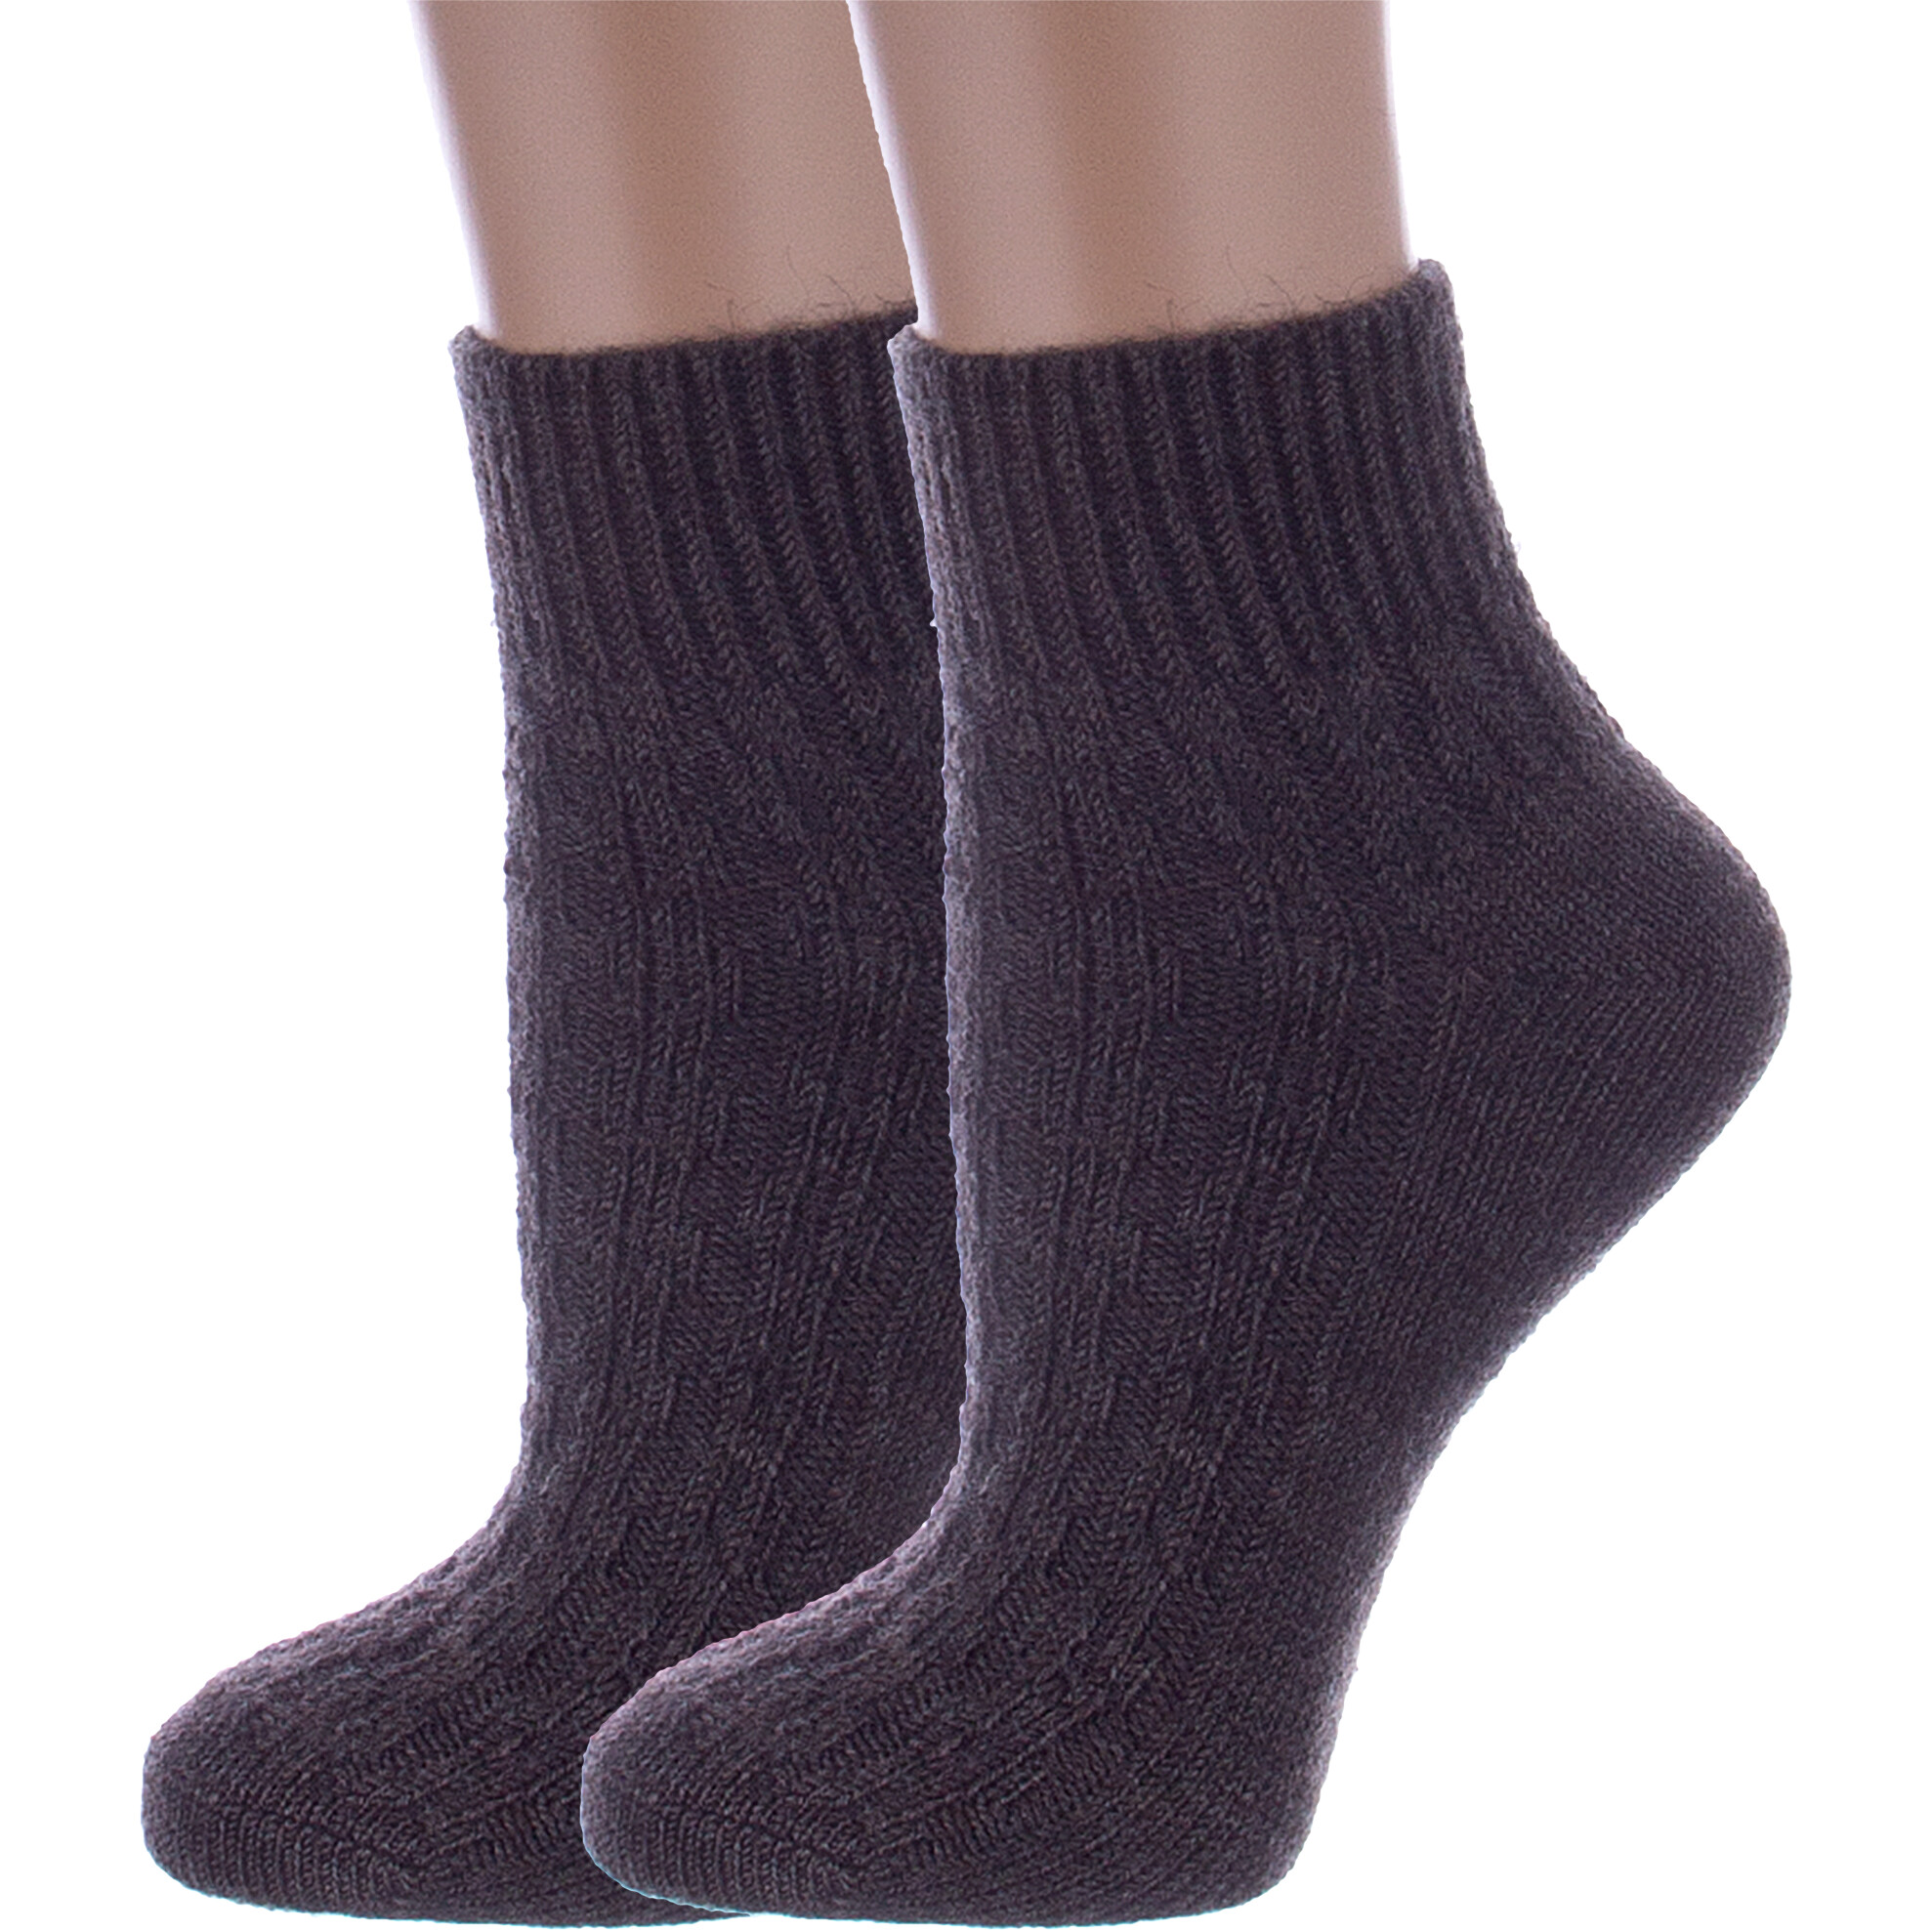 Комплект носков женских Rusocks 2-Ж-23801 коричневых 23, 2 пары